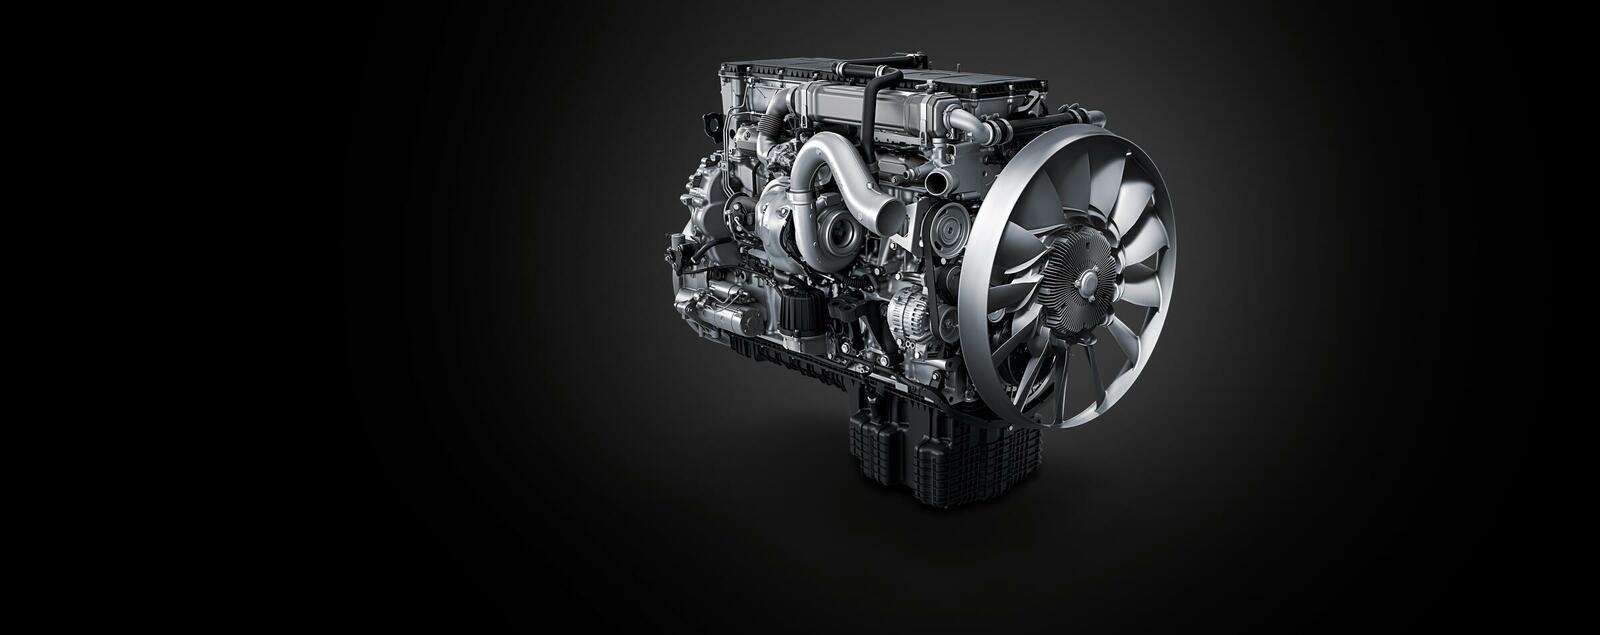 Die neuen Turbolader sind eine Eigenentwicklung von Daimler und werden im Haus gefertigt.